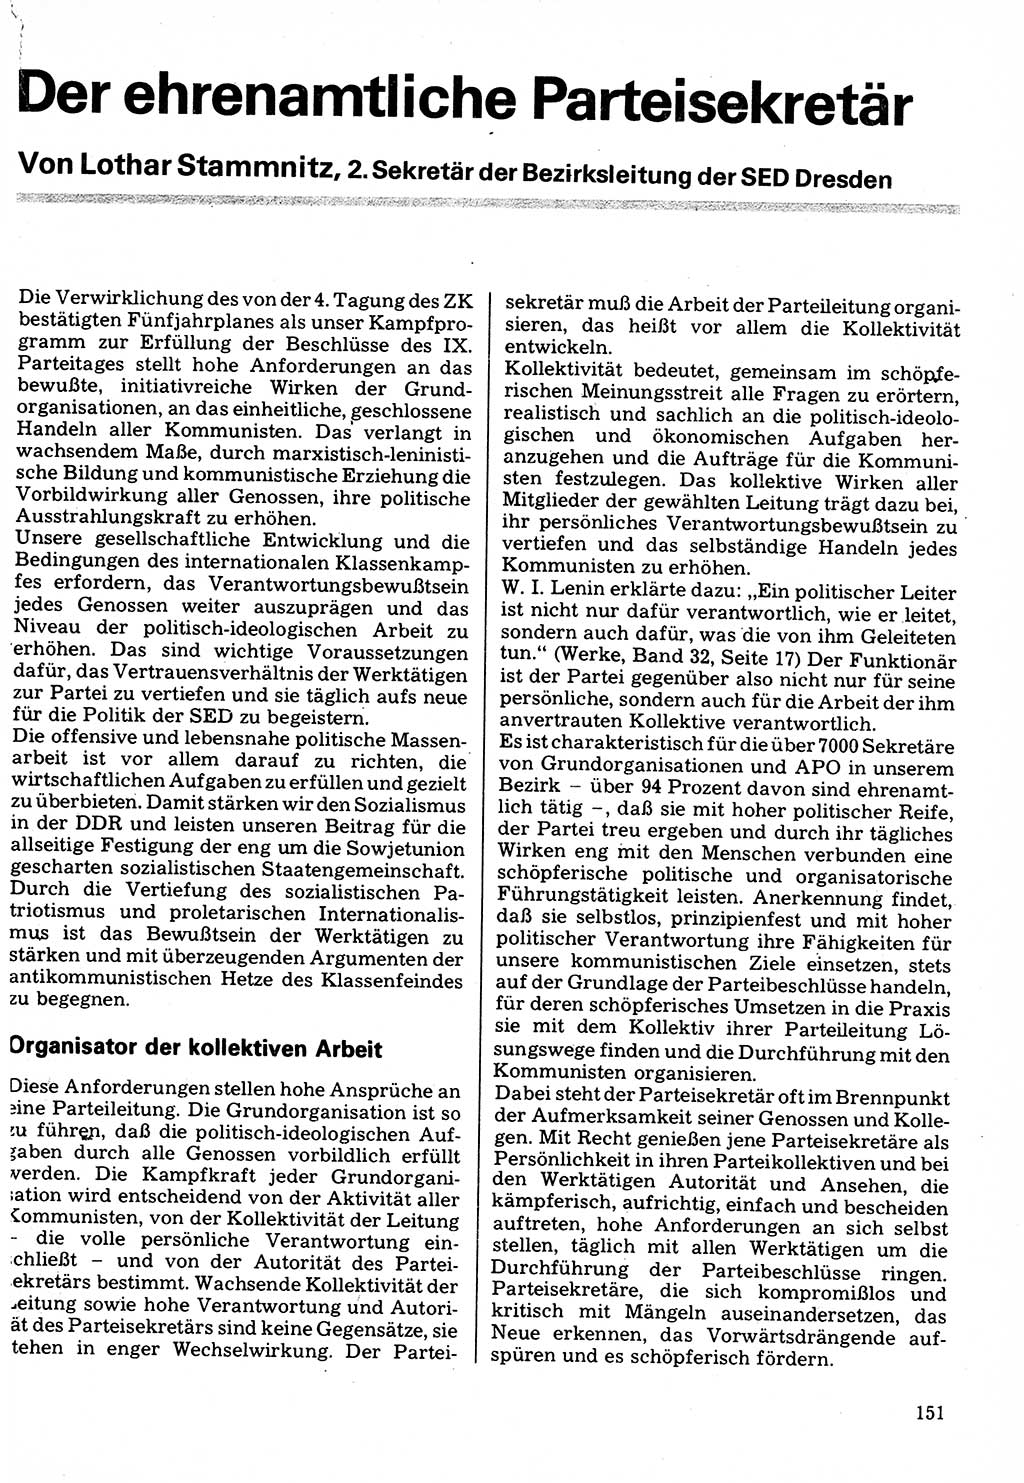 Neuer Weg (NW), Organ des Zentralkomitees (ZK) der SED (Sozialistische Einheitspartei Deutschlands) für Fragen des Parteilebens, 32. Jahrgang [Deutsche Demokratische Republik (DDR)] 1977, Seite 151 (NW ZK SED DDR 1977, S. 151)